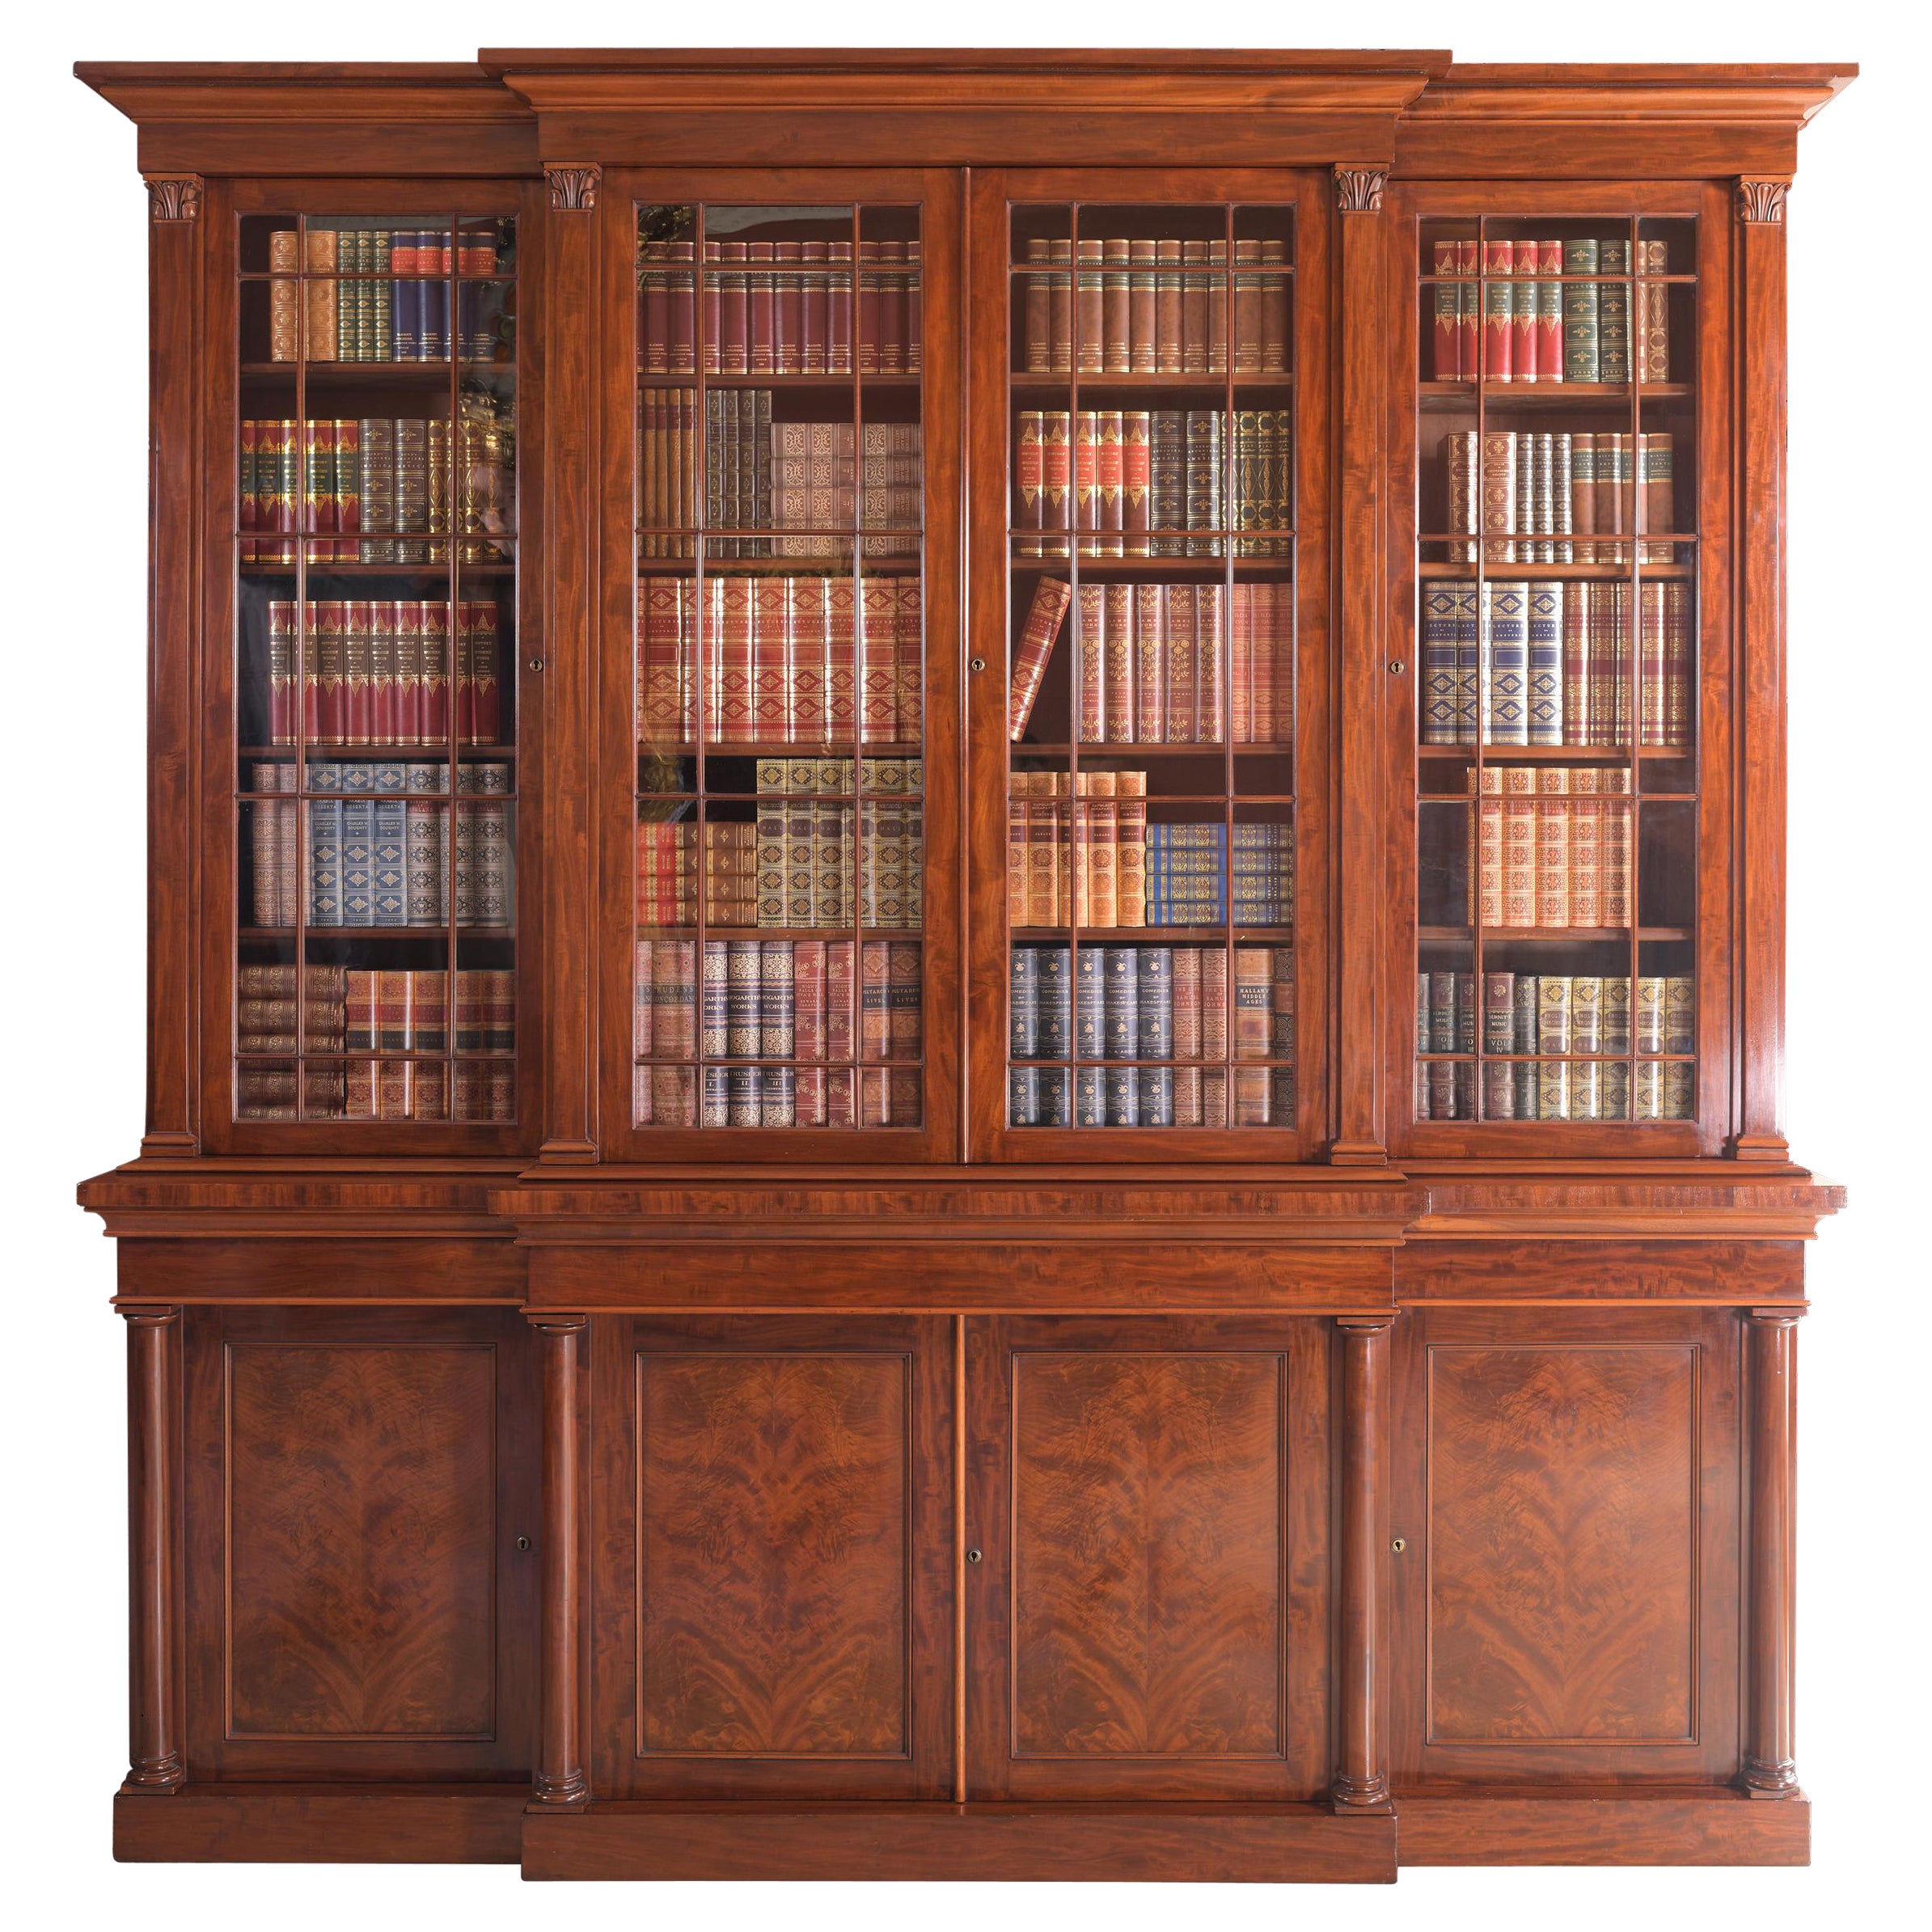 Bibliothèque Regency anglaise du 19ème siècle attribuée à Gillows Lancaster